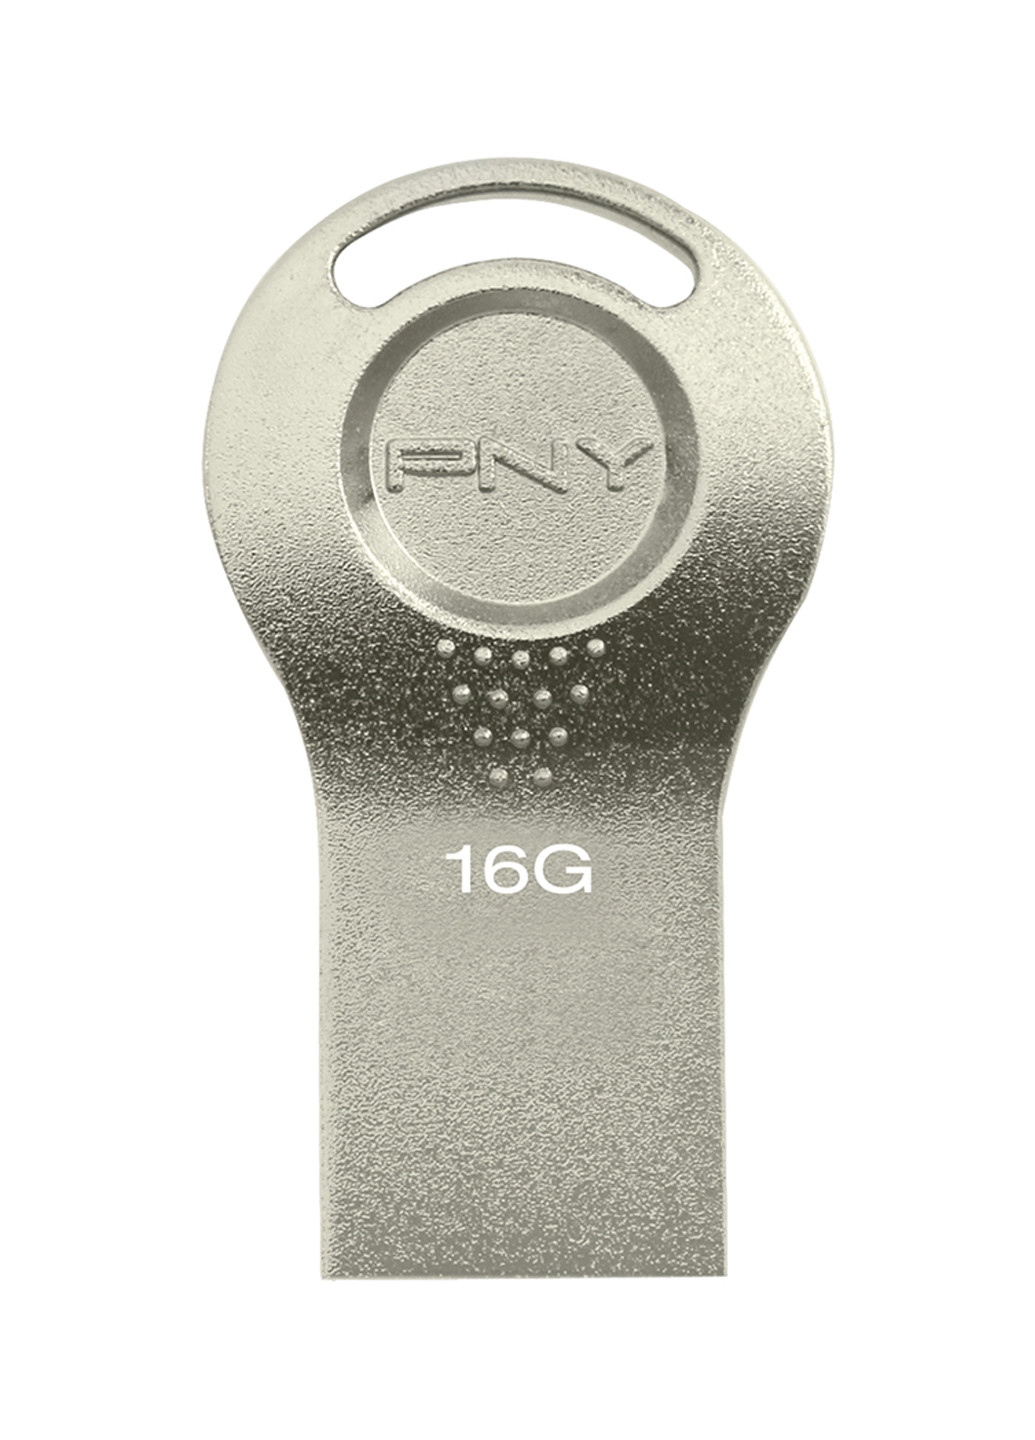 Флеш пам'ять USB Attache I 16GB Durable Metal Silver (FDI16GATTI-EF) PNY флеш память usb pny attache i 16gb durable metal silver (fdi16gatti-ef) (135526996)